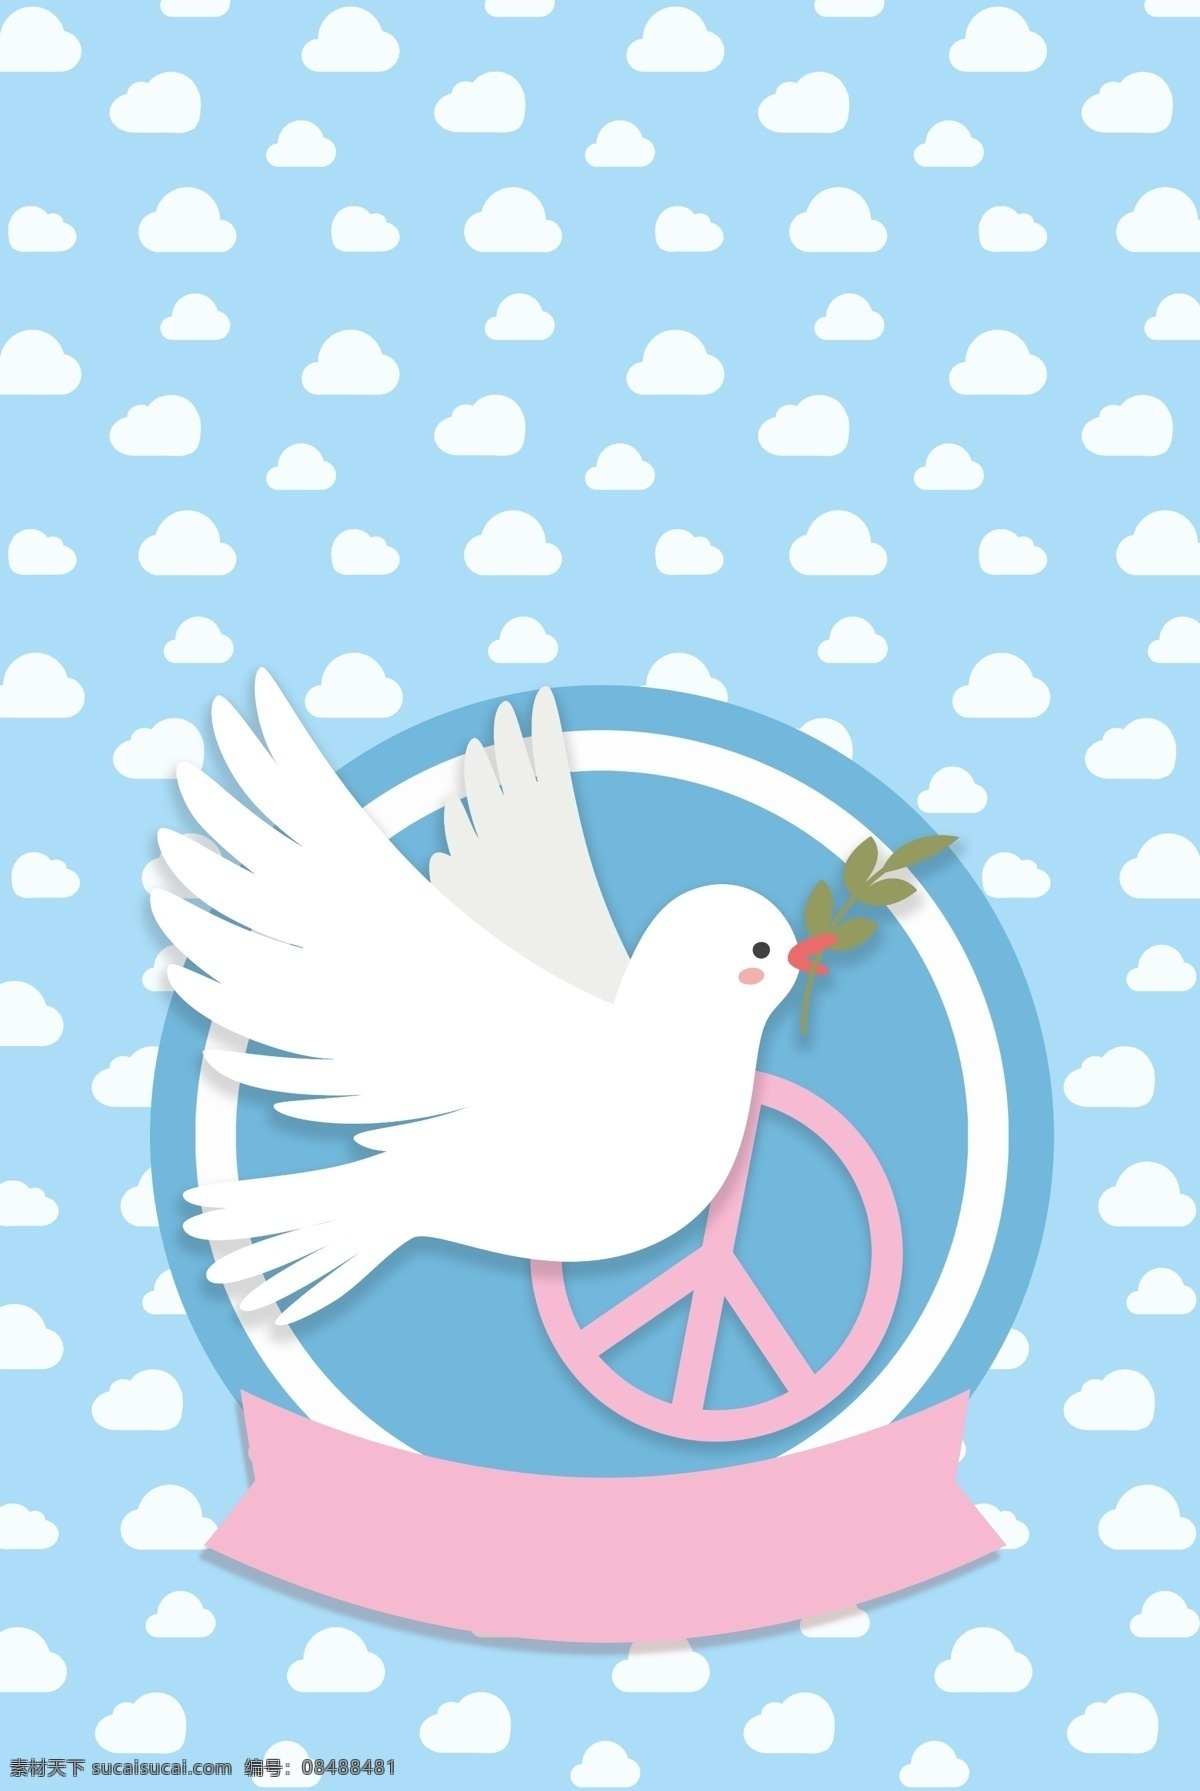 世界 平日 和平鸽 免战 标志 扁平 风 海报 世界和平日 橄榄枝 飞鸟 矢量 云朵 条幅 宣传 背景